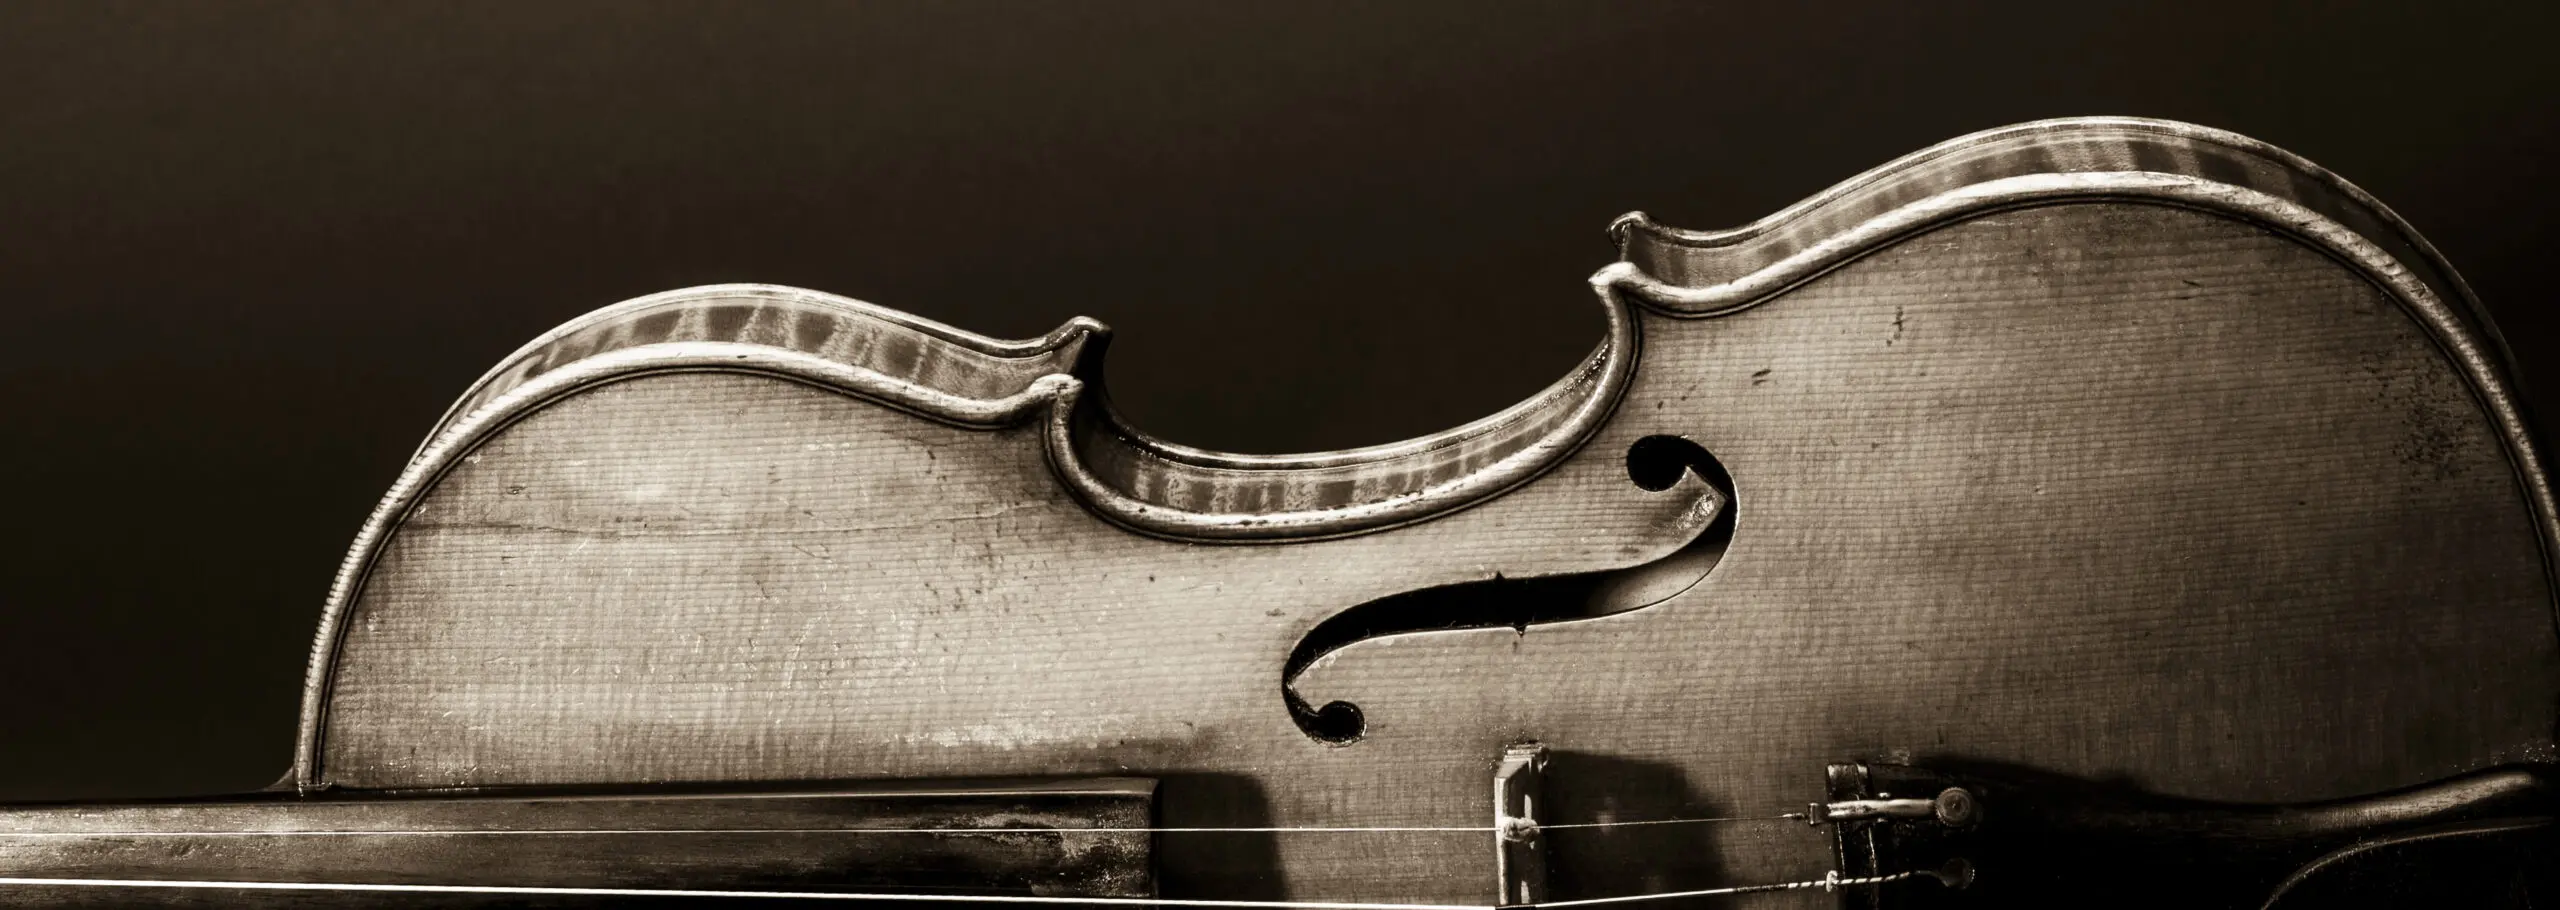 Wandbild (1637) My Violin präsentiert: Stillleben,Kreatives,Details und Strukturen,Instrumente